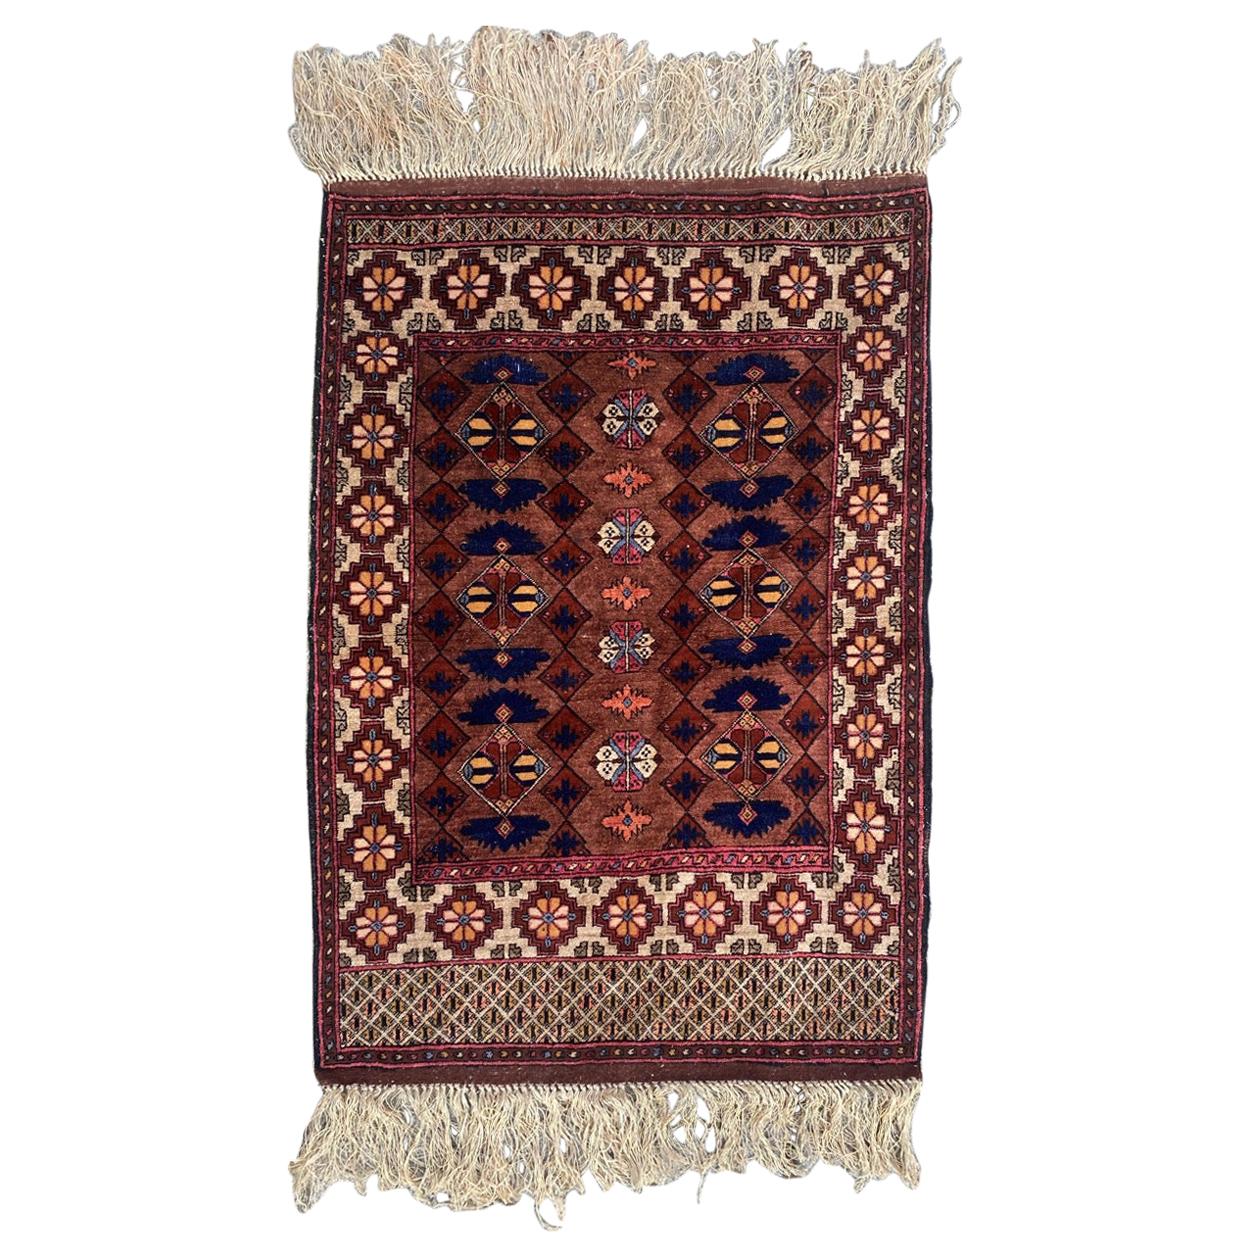 Wunderschöner türkischer Vintage-Teppich aus Seide